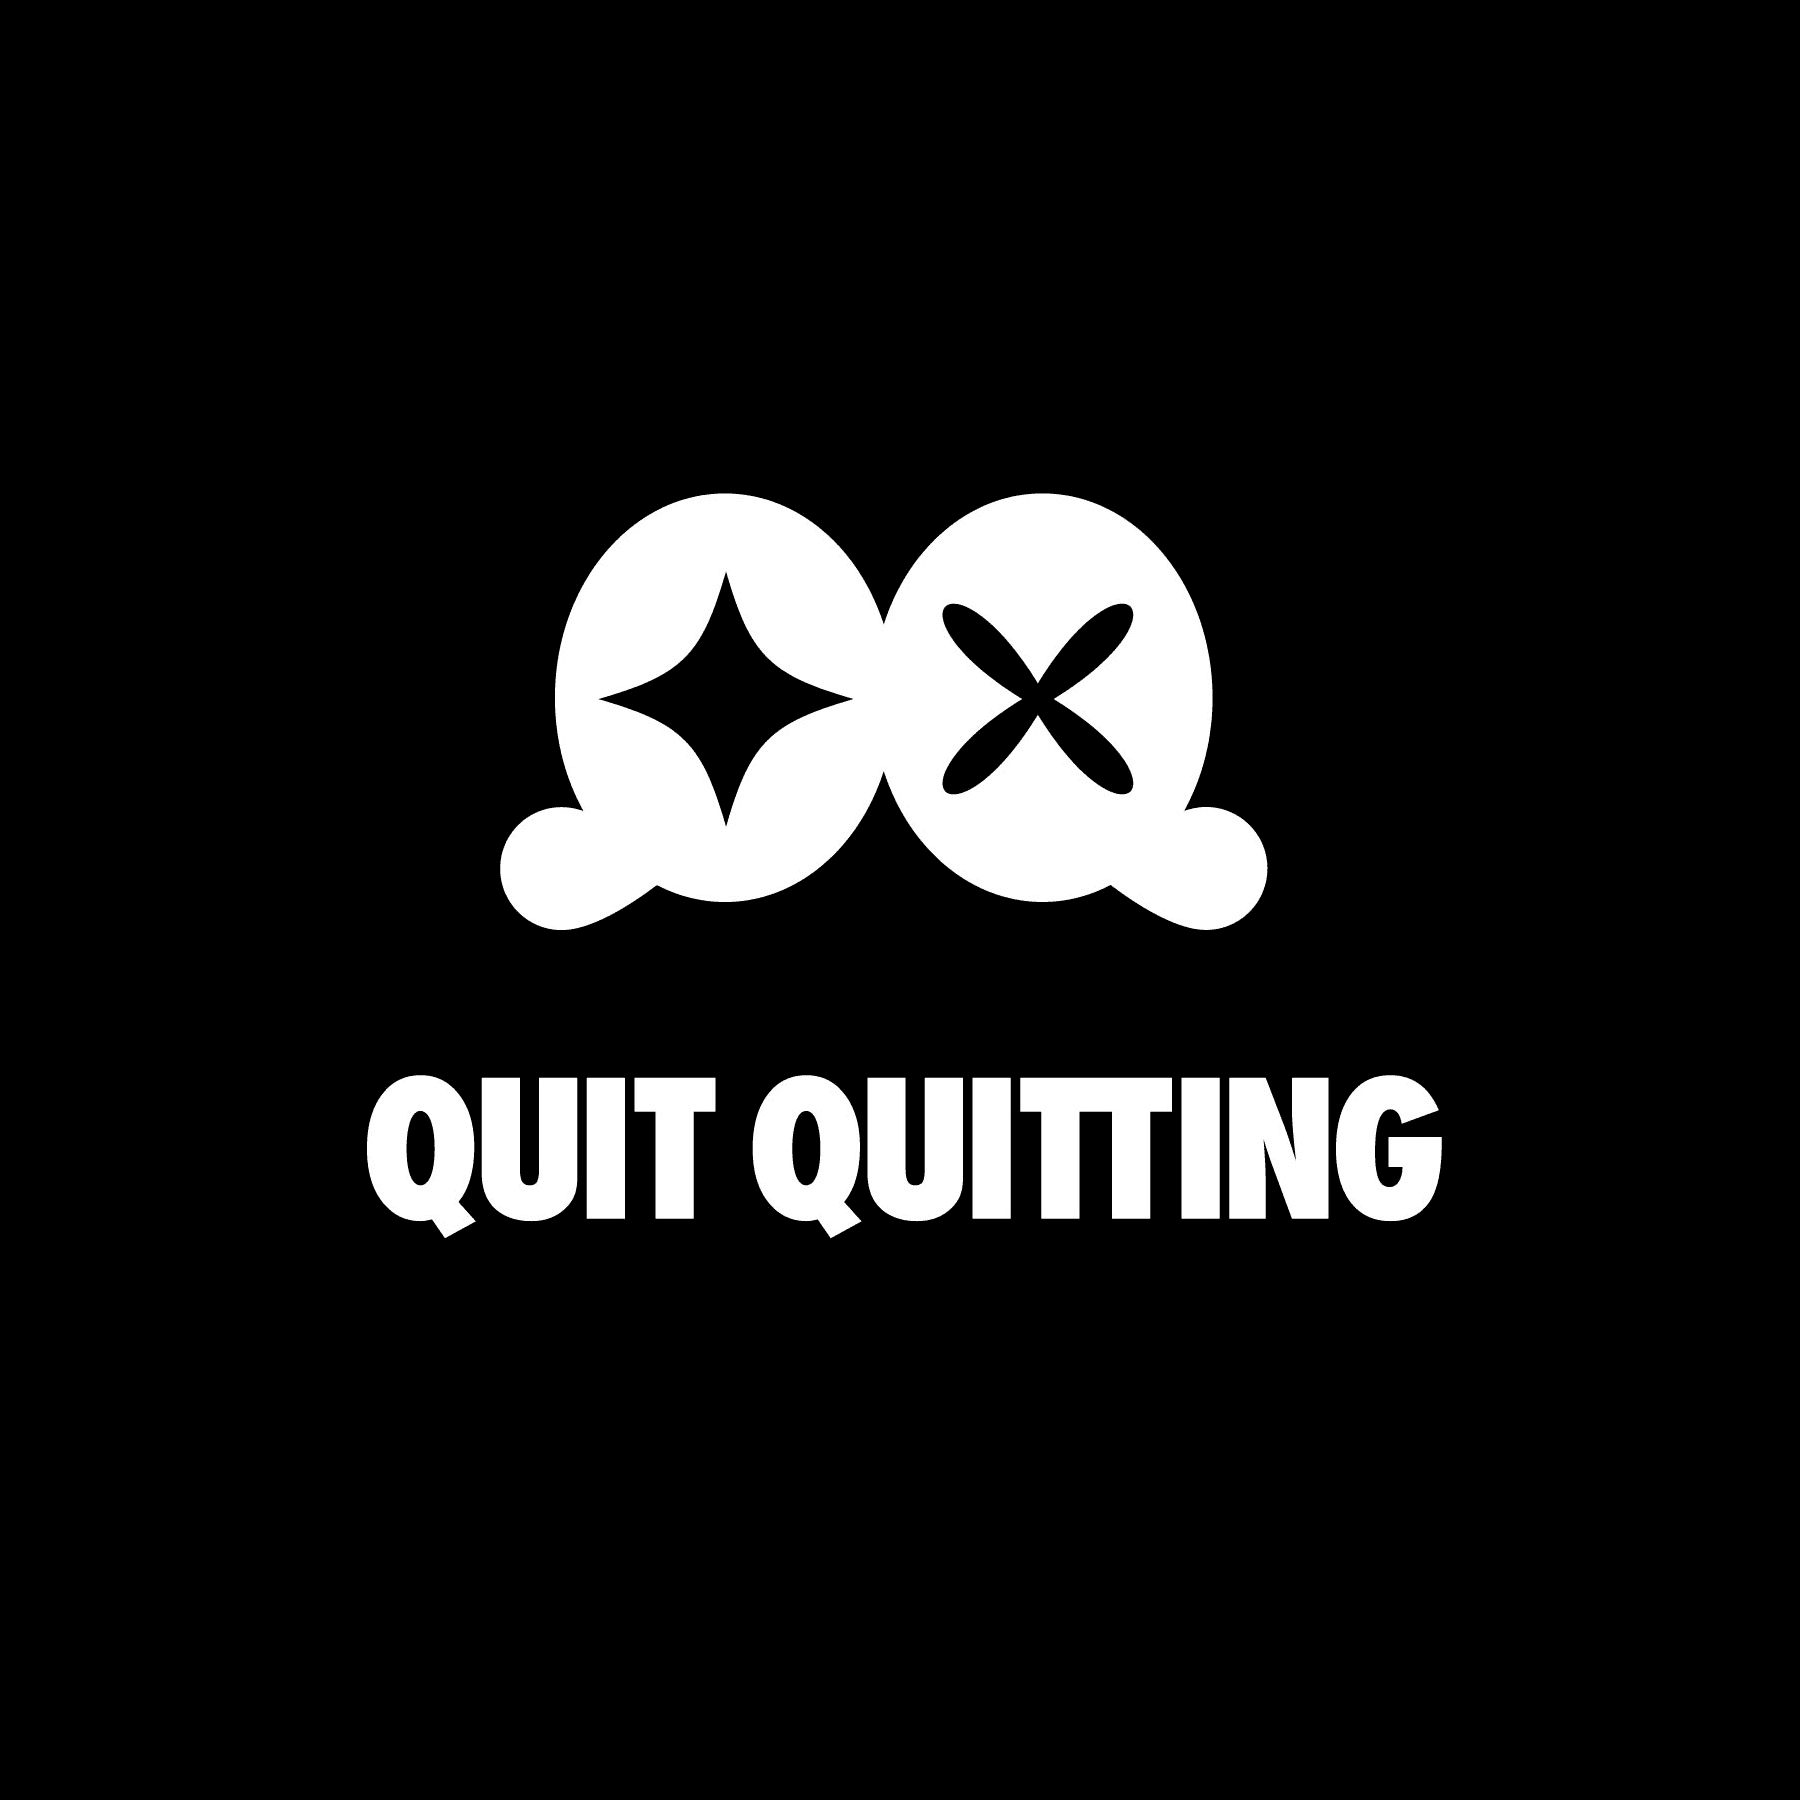 quitquitting